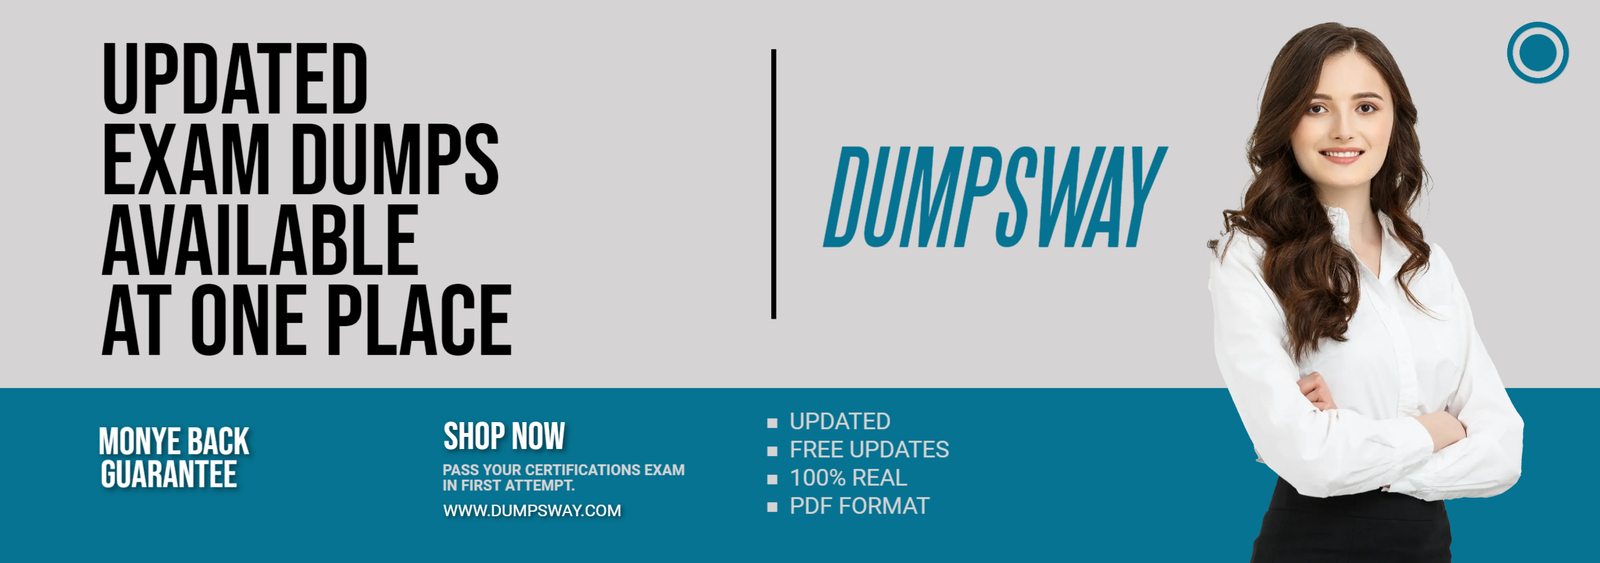 Dumps Way Dumps